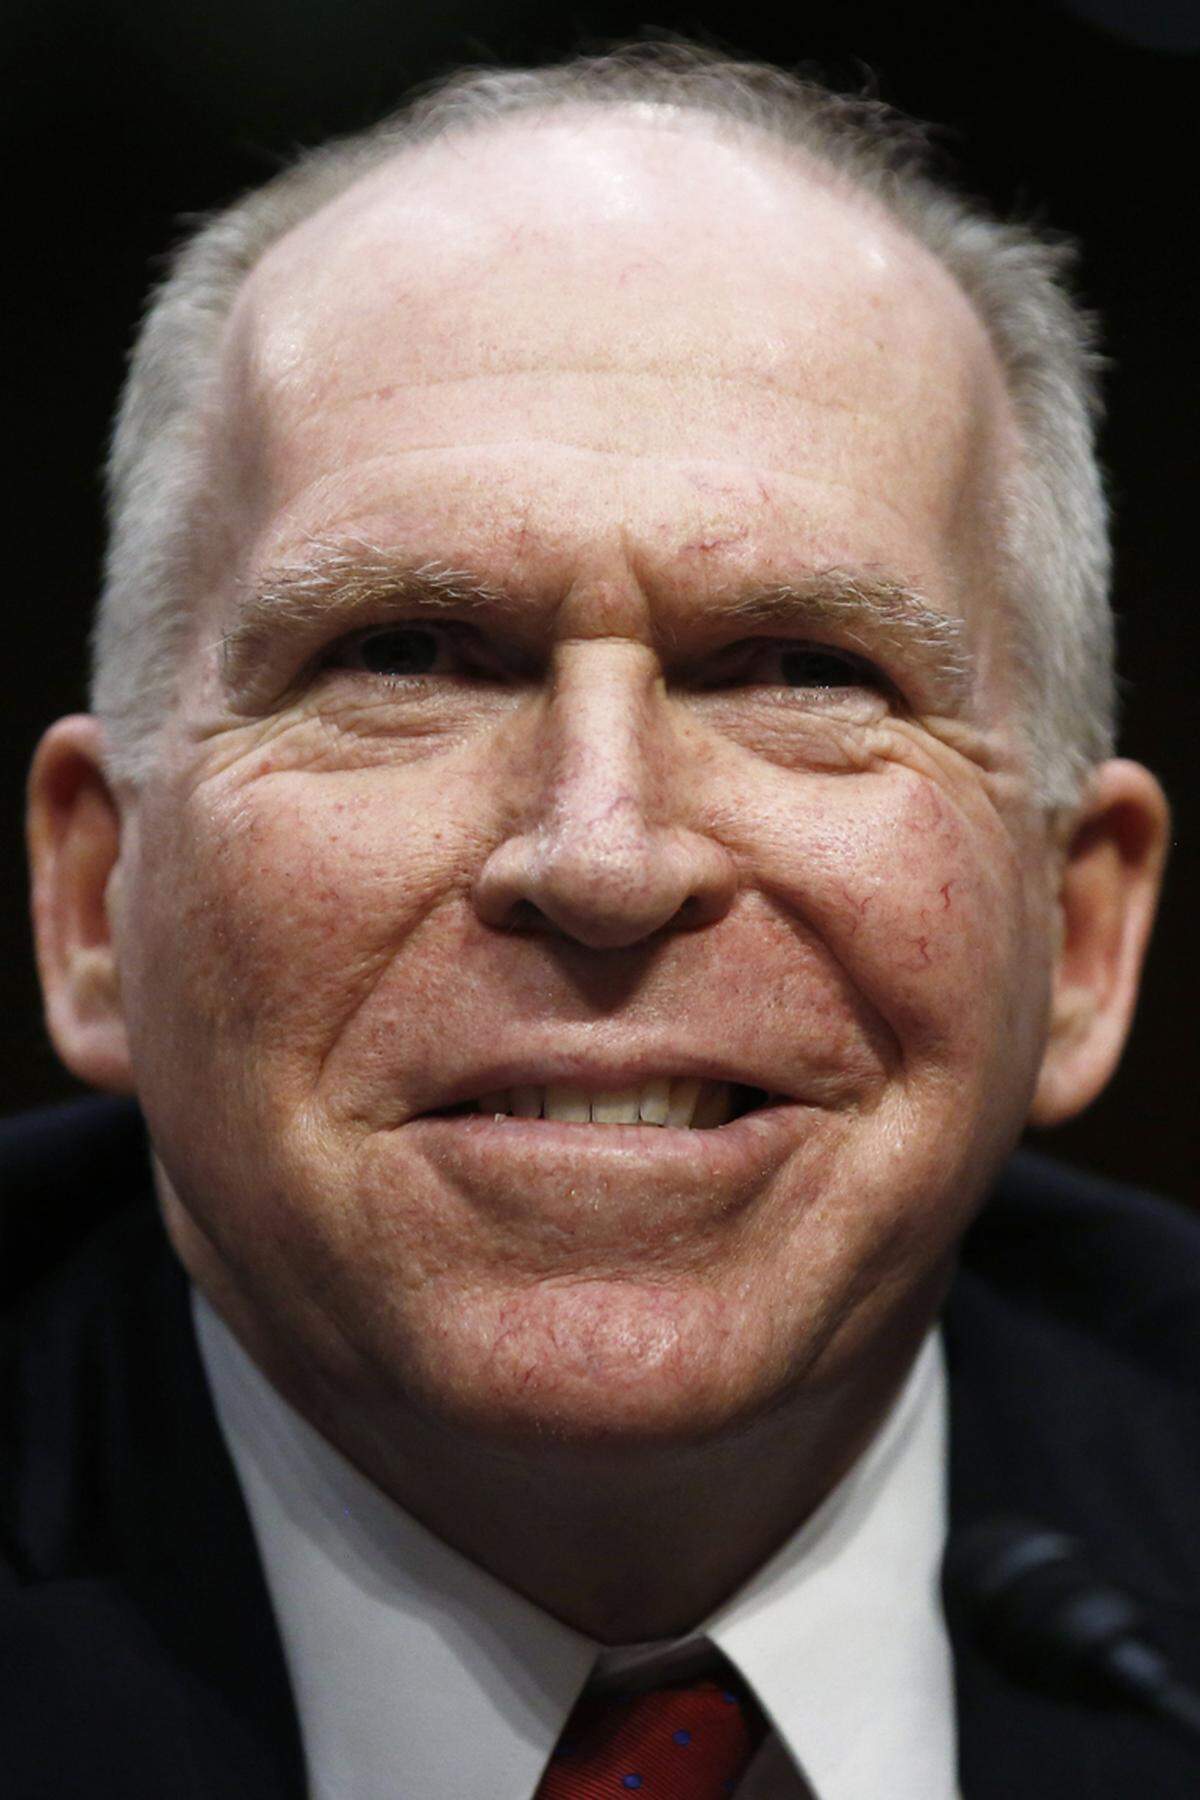 Der Geheimdienst spielt eine wichtige Rolle in den Kriegen der USA. Umstritten sind seine Tätigkeiten wegen menschenrechtswidriger Handlungen in der Terrorbekämpfung – Stichworte Guantanamo, Drohnen etc. - und Verstrickungen in den Drogenhandel zur Unterstützung von paramilitärischen Verbänden (Vietnamkrieg). Und die CIA hatte auch bereits einige Fehlschläge zu verkraften, wie etwa die Invasion der Schweinebucht in Kuba (1961).Bild: John O. Brennan, war bis zum 20. Jänner Direktor der CIA (D/CIA)